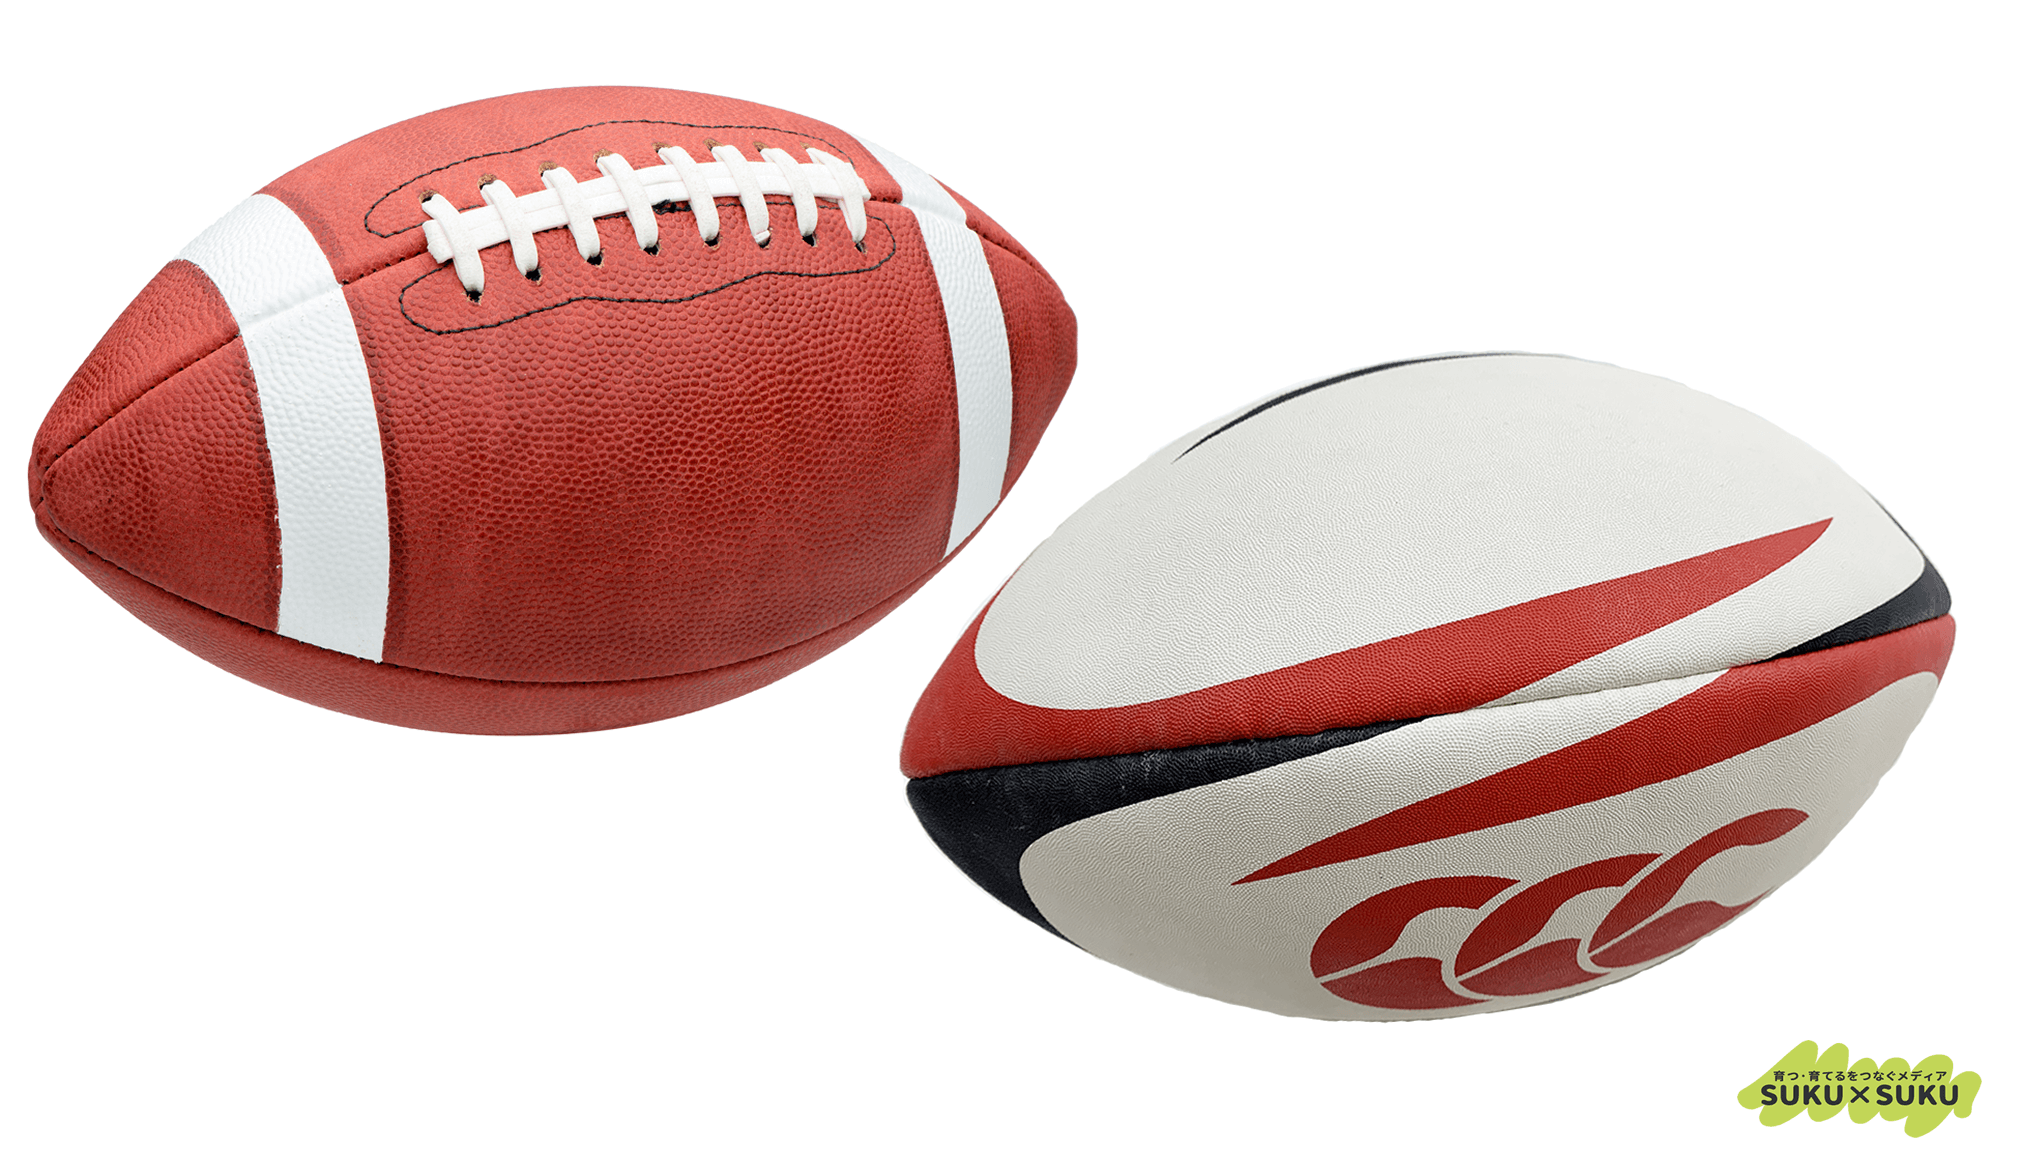 ラグビーボールとアメフトのボール、どちらがどちらかわかりますか？